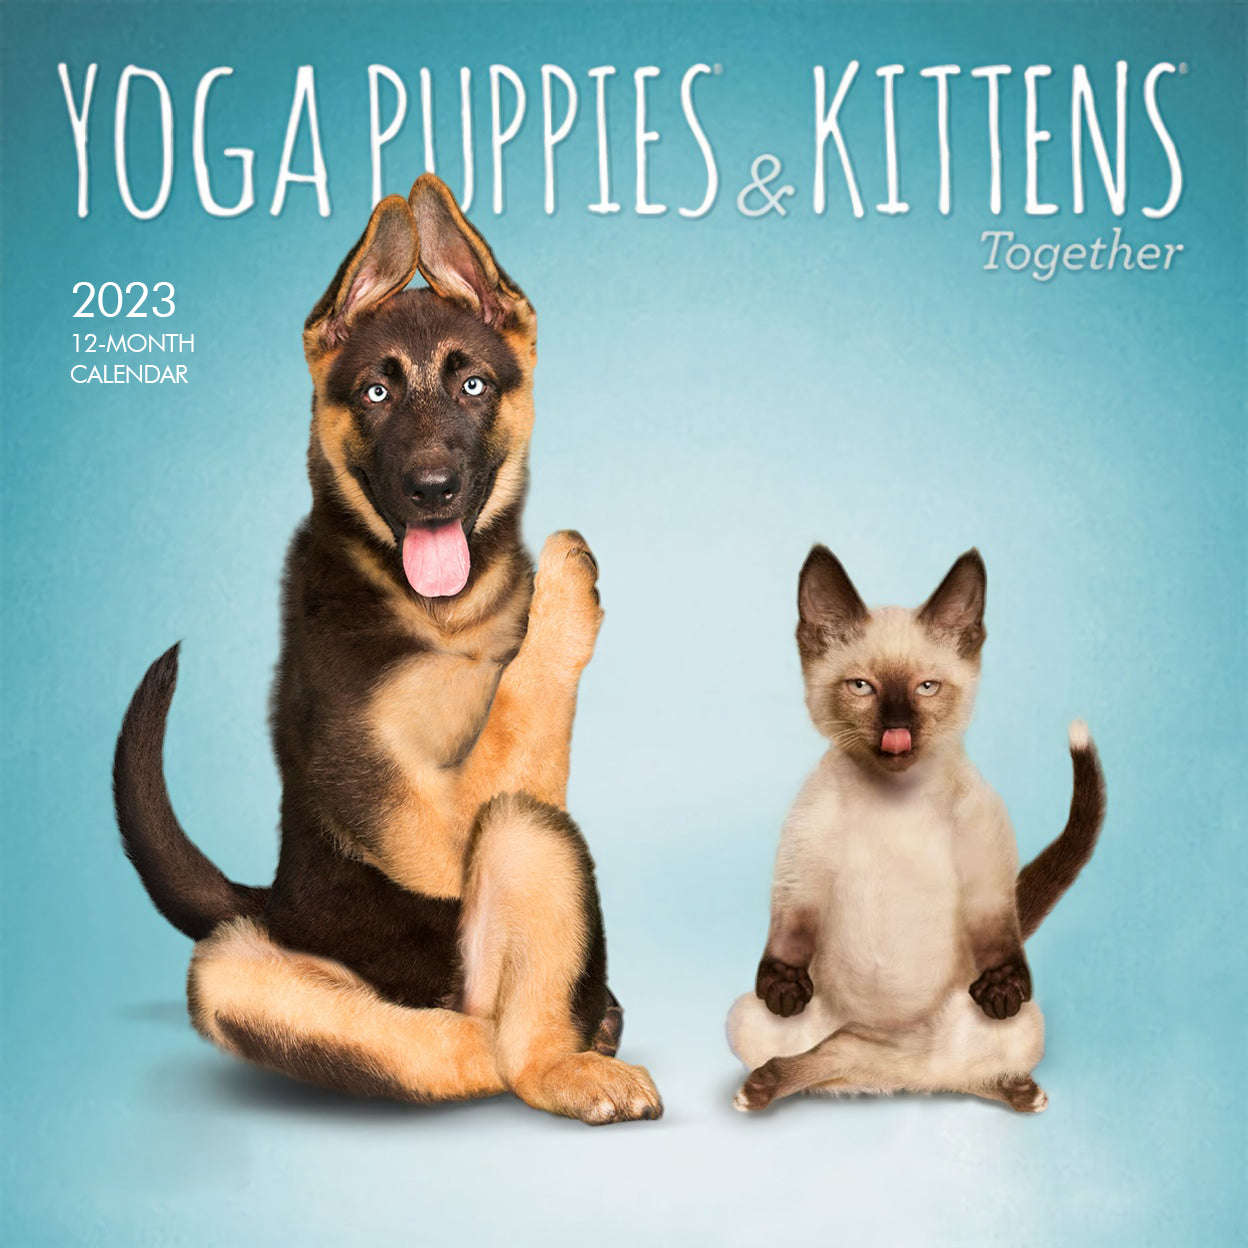 Yoga Puppies & Kittens 2023 Mini Wall Calendar